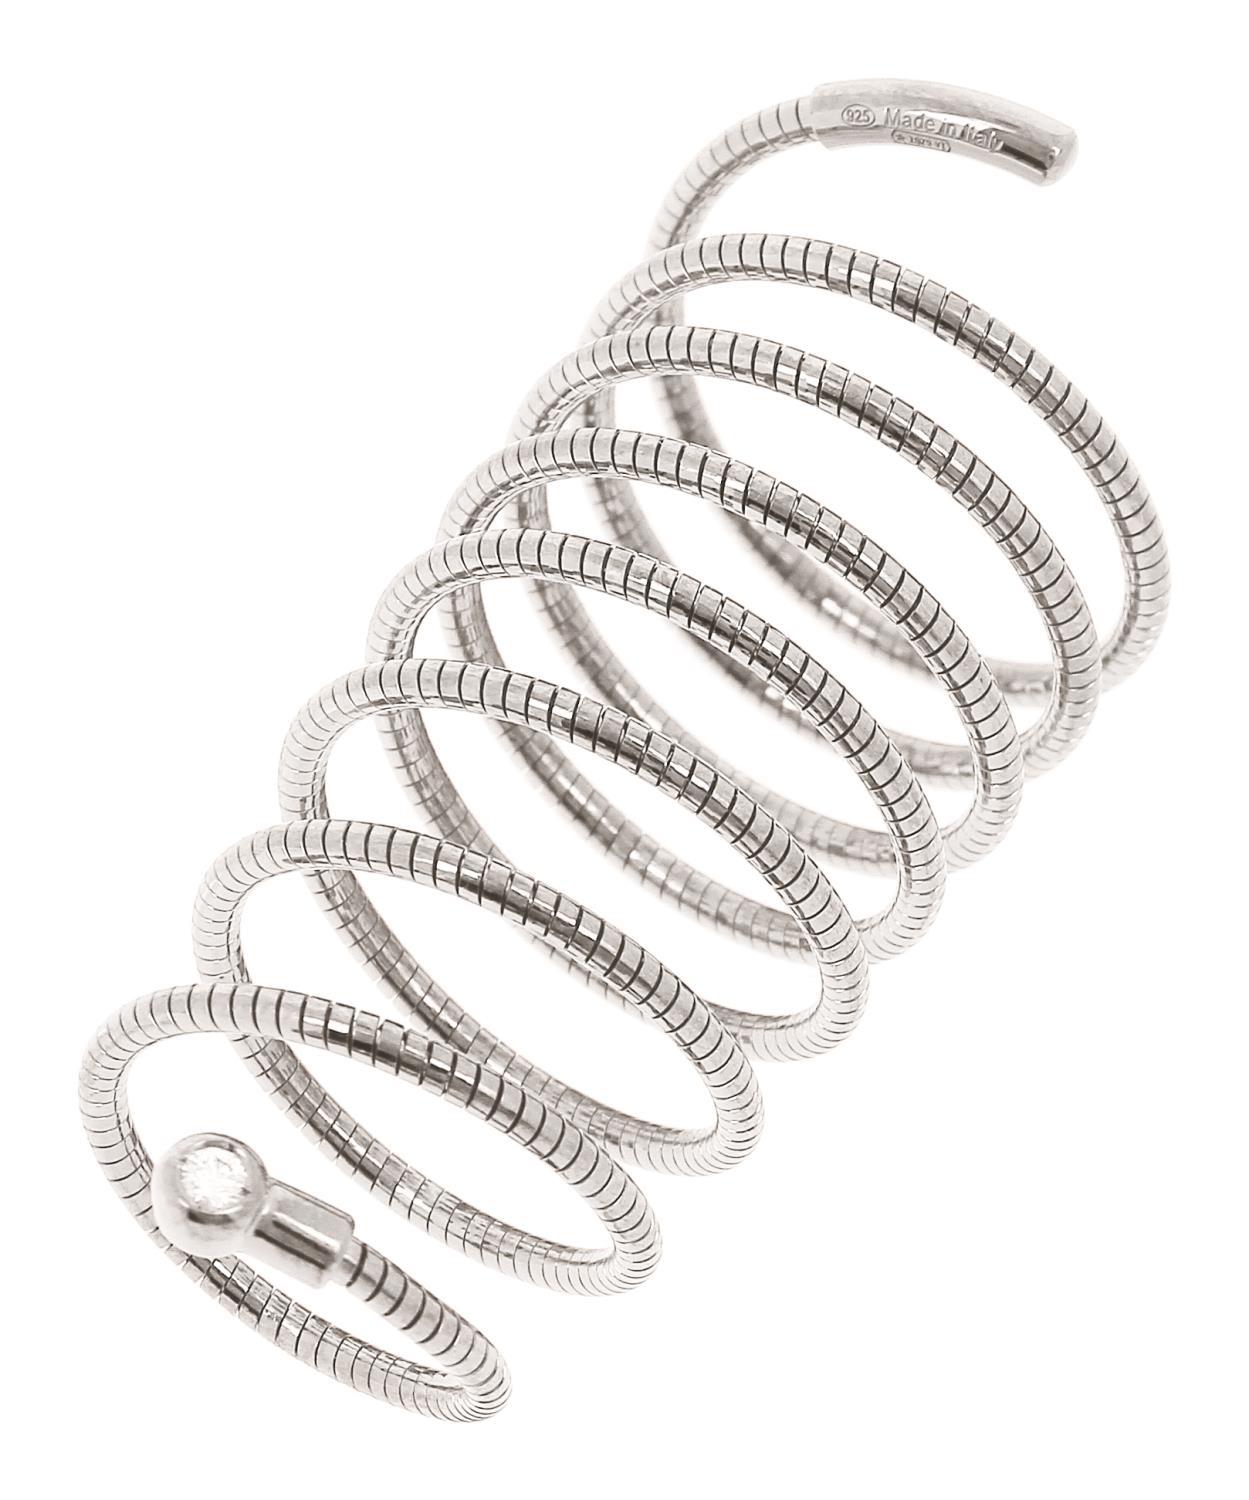 Pesavento - Anello Spirale DNA Spring Ref. WDNAA190/L - PESAVENTO